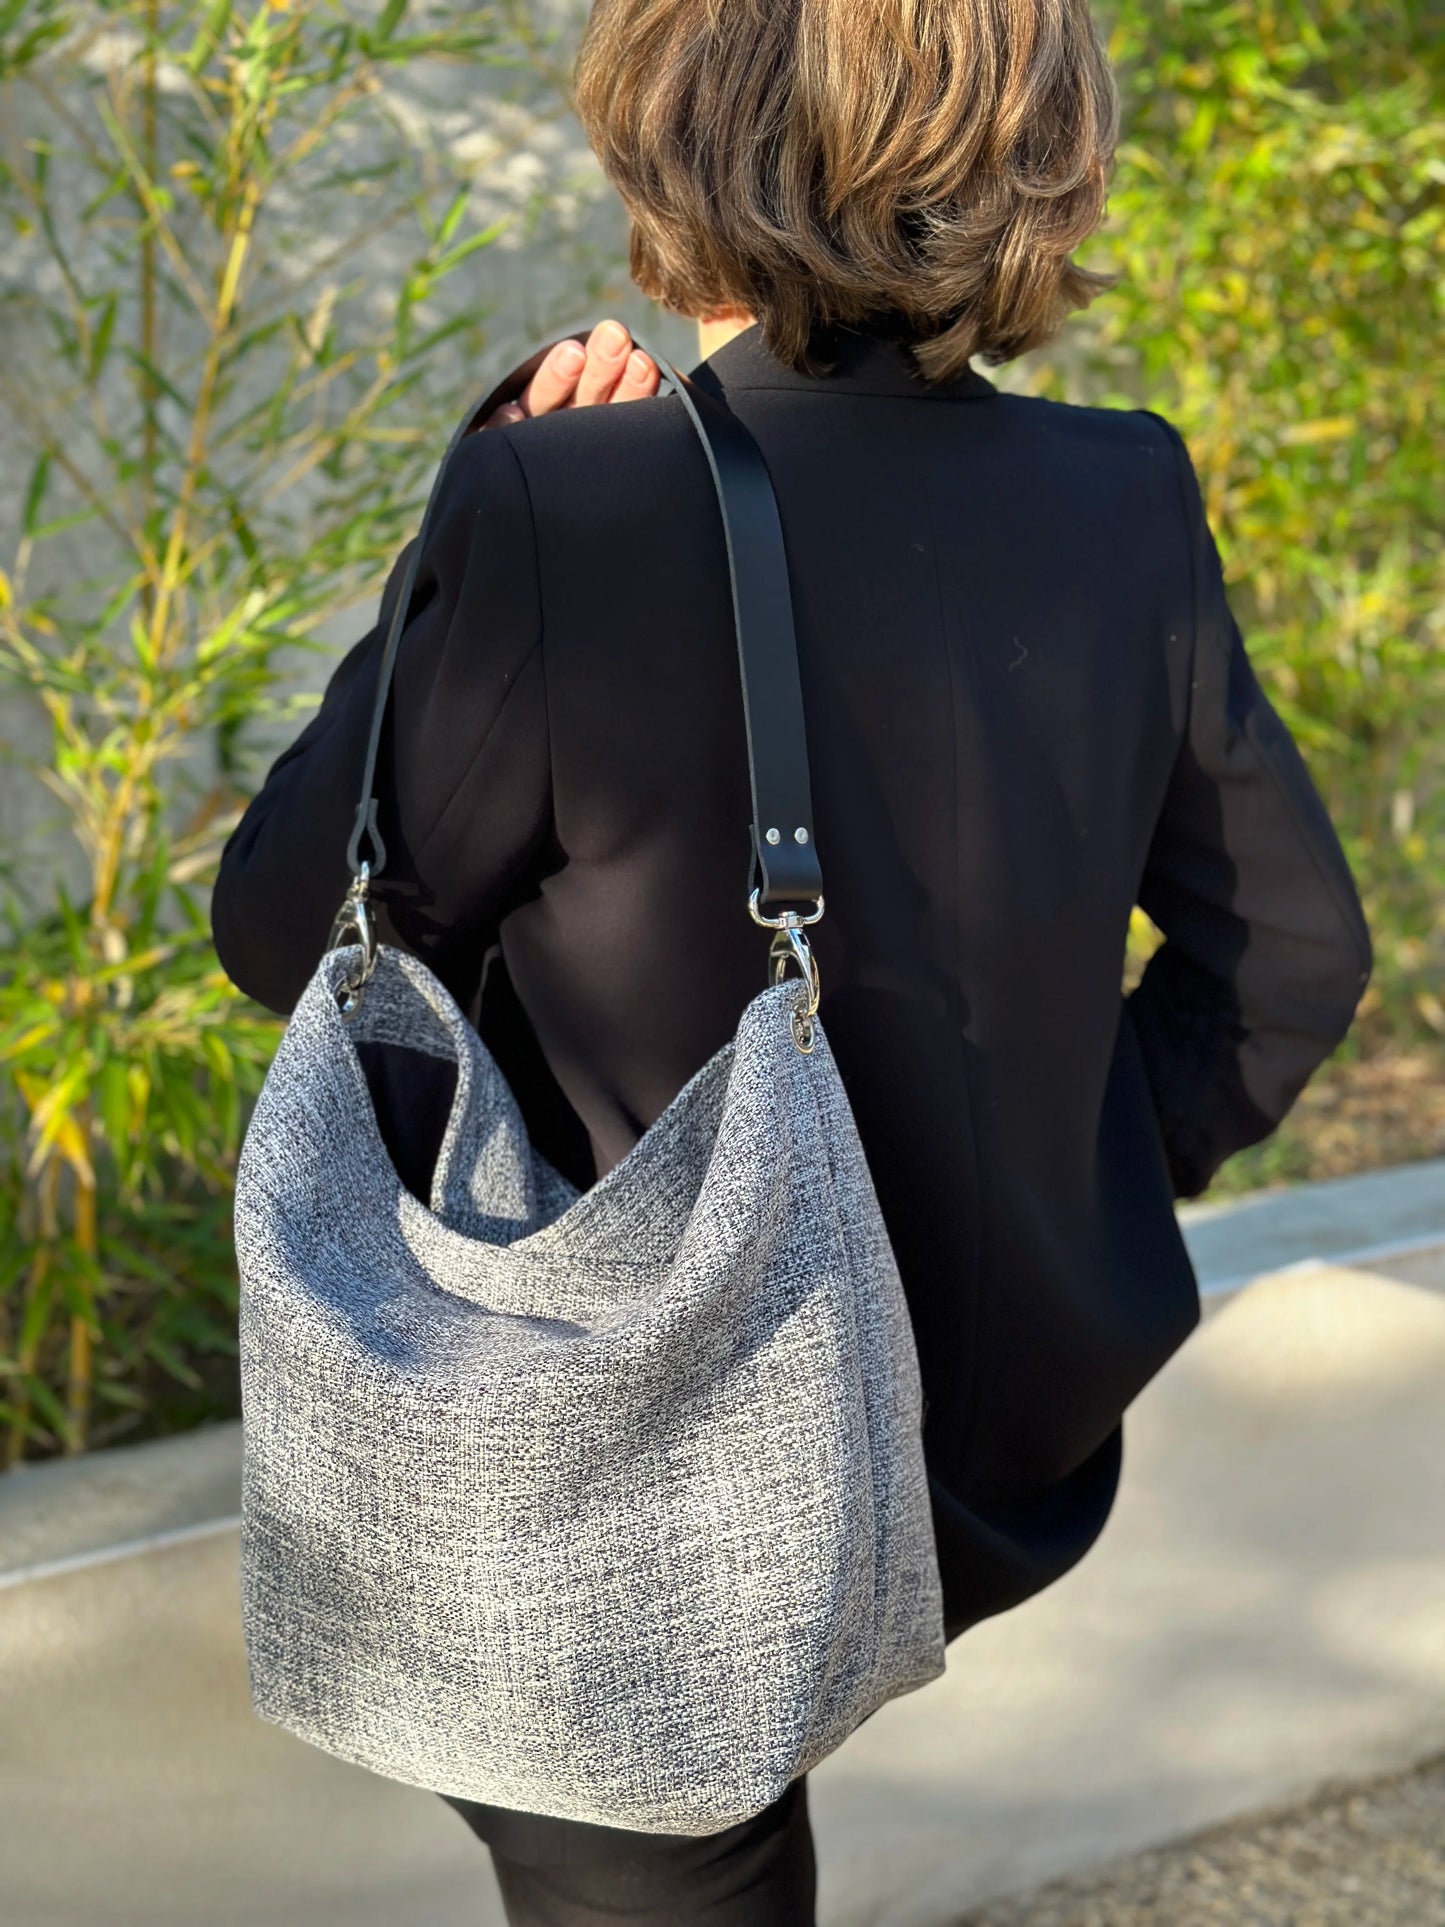 Femme portant le sac hobo gris chiné et son anse en cuir noir.